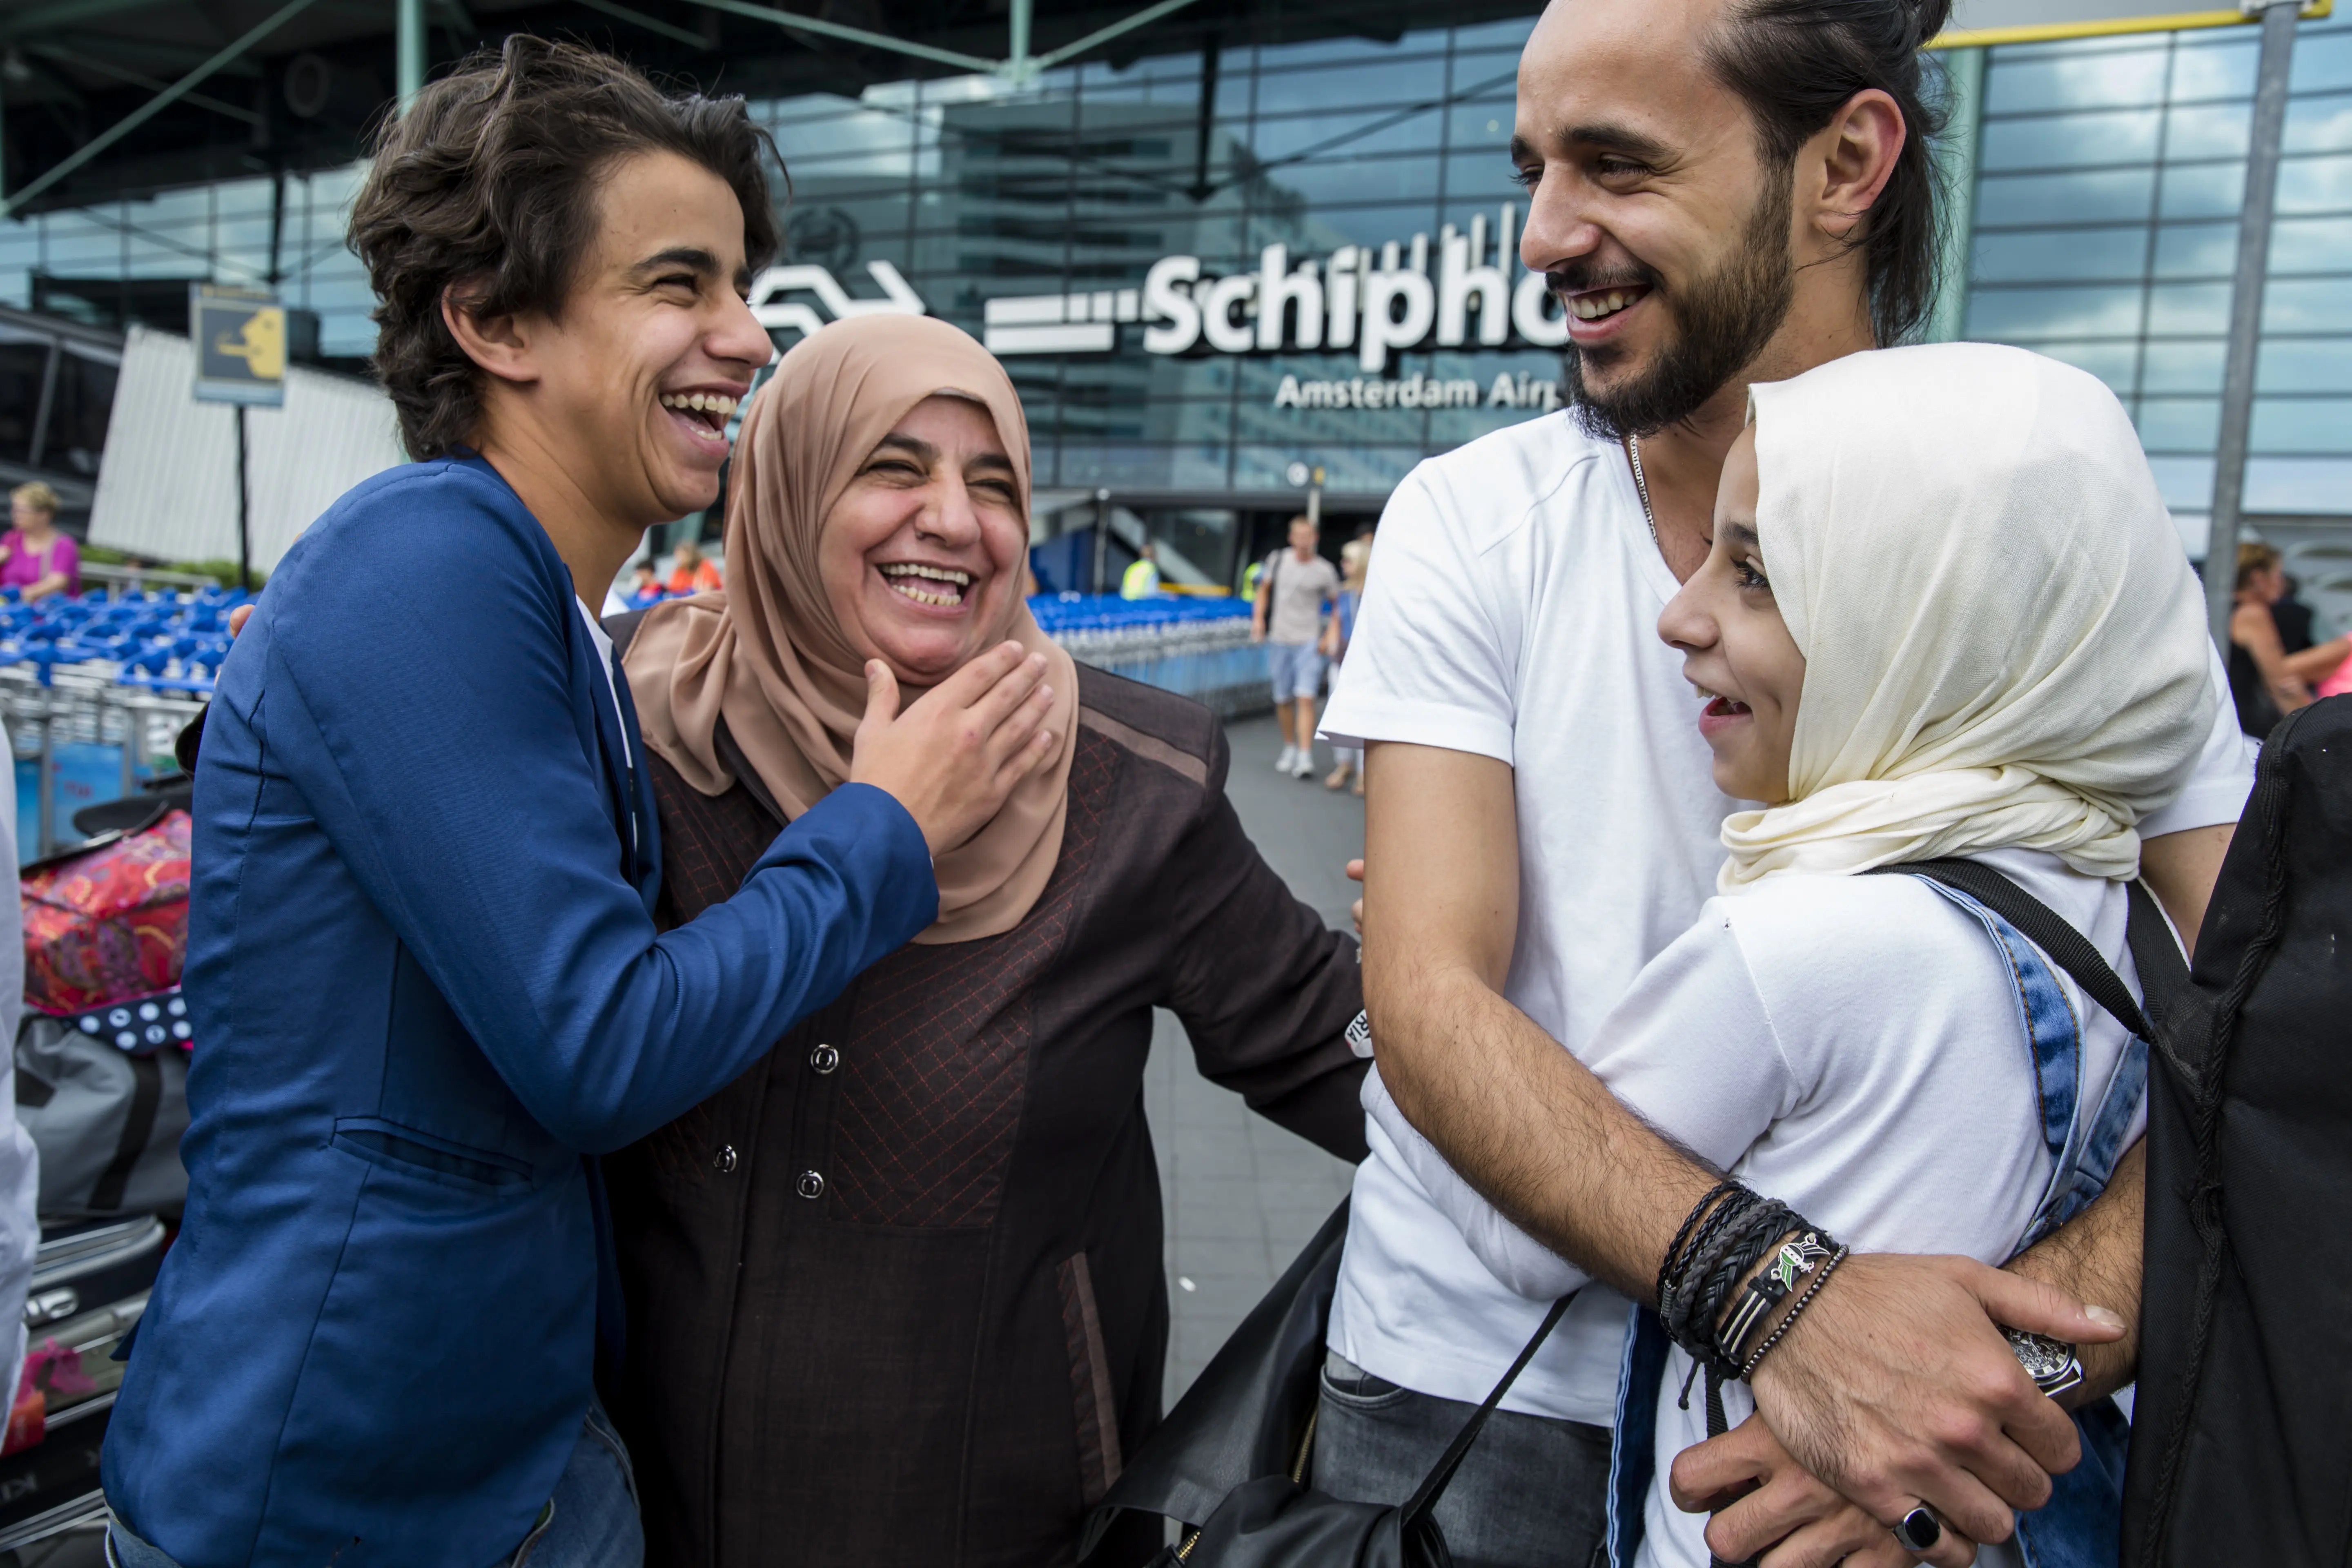 الحاق به خانواده در فرودگاه "اسخیپول" Schiphol